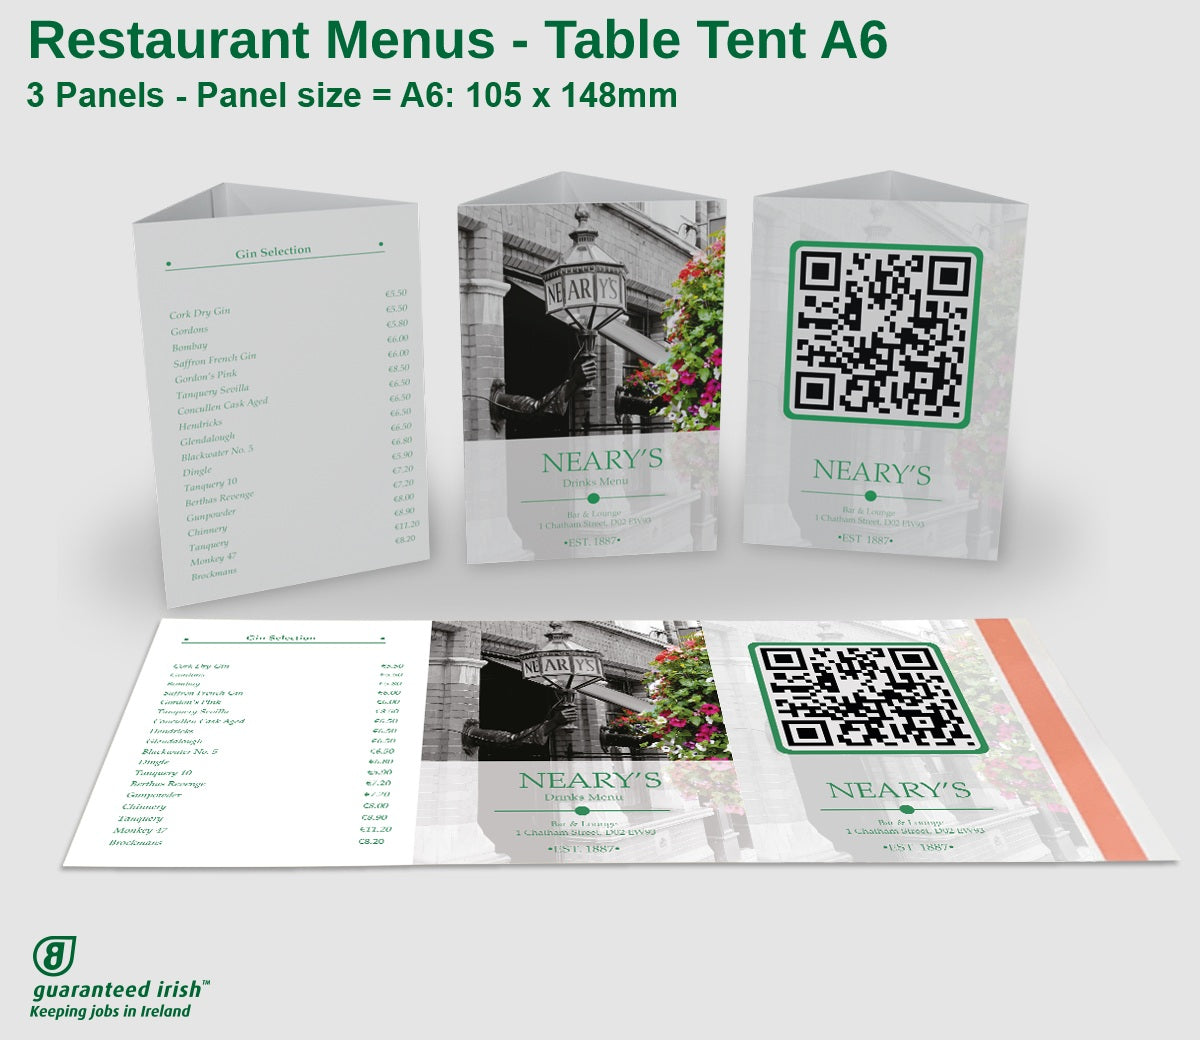 Restaurant Menus - Table Tent A6